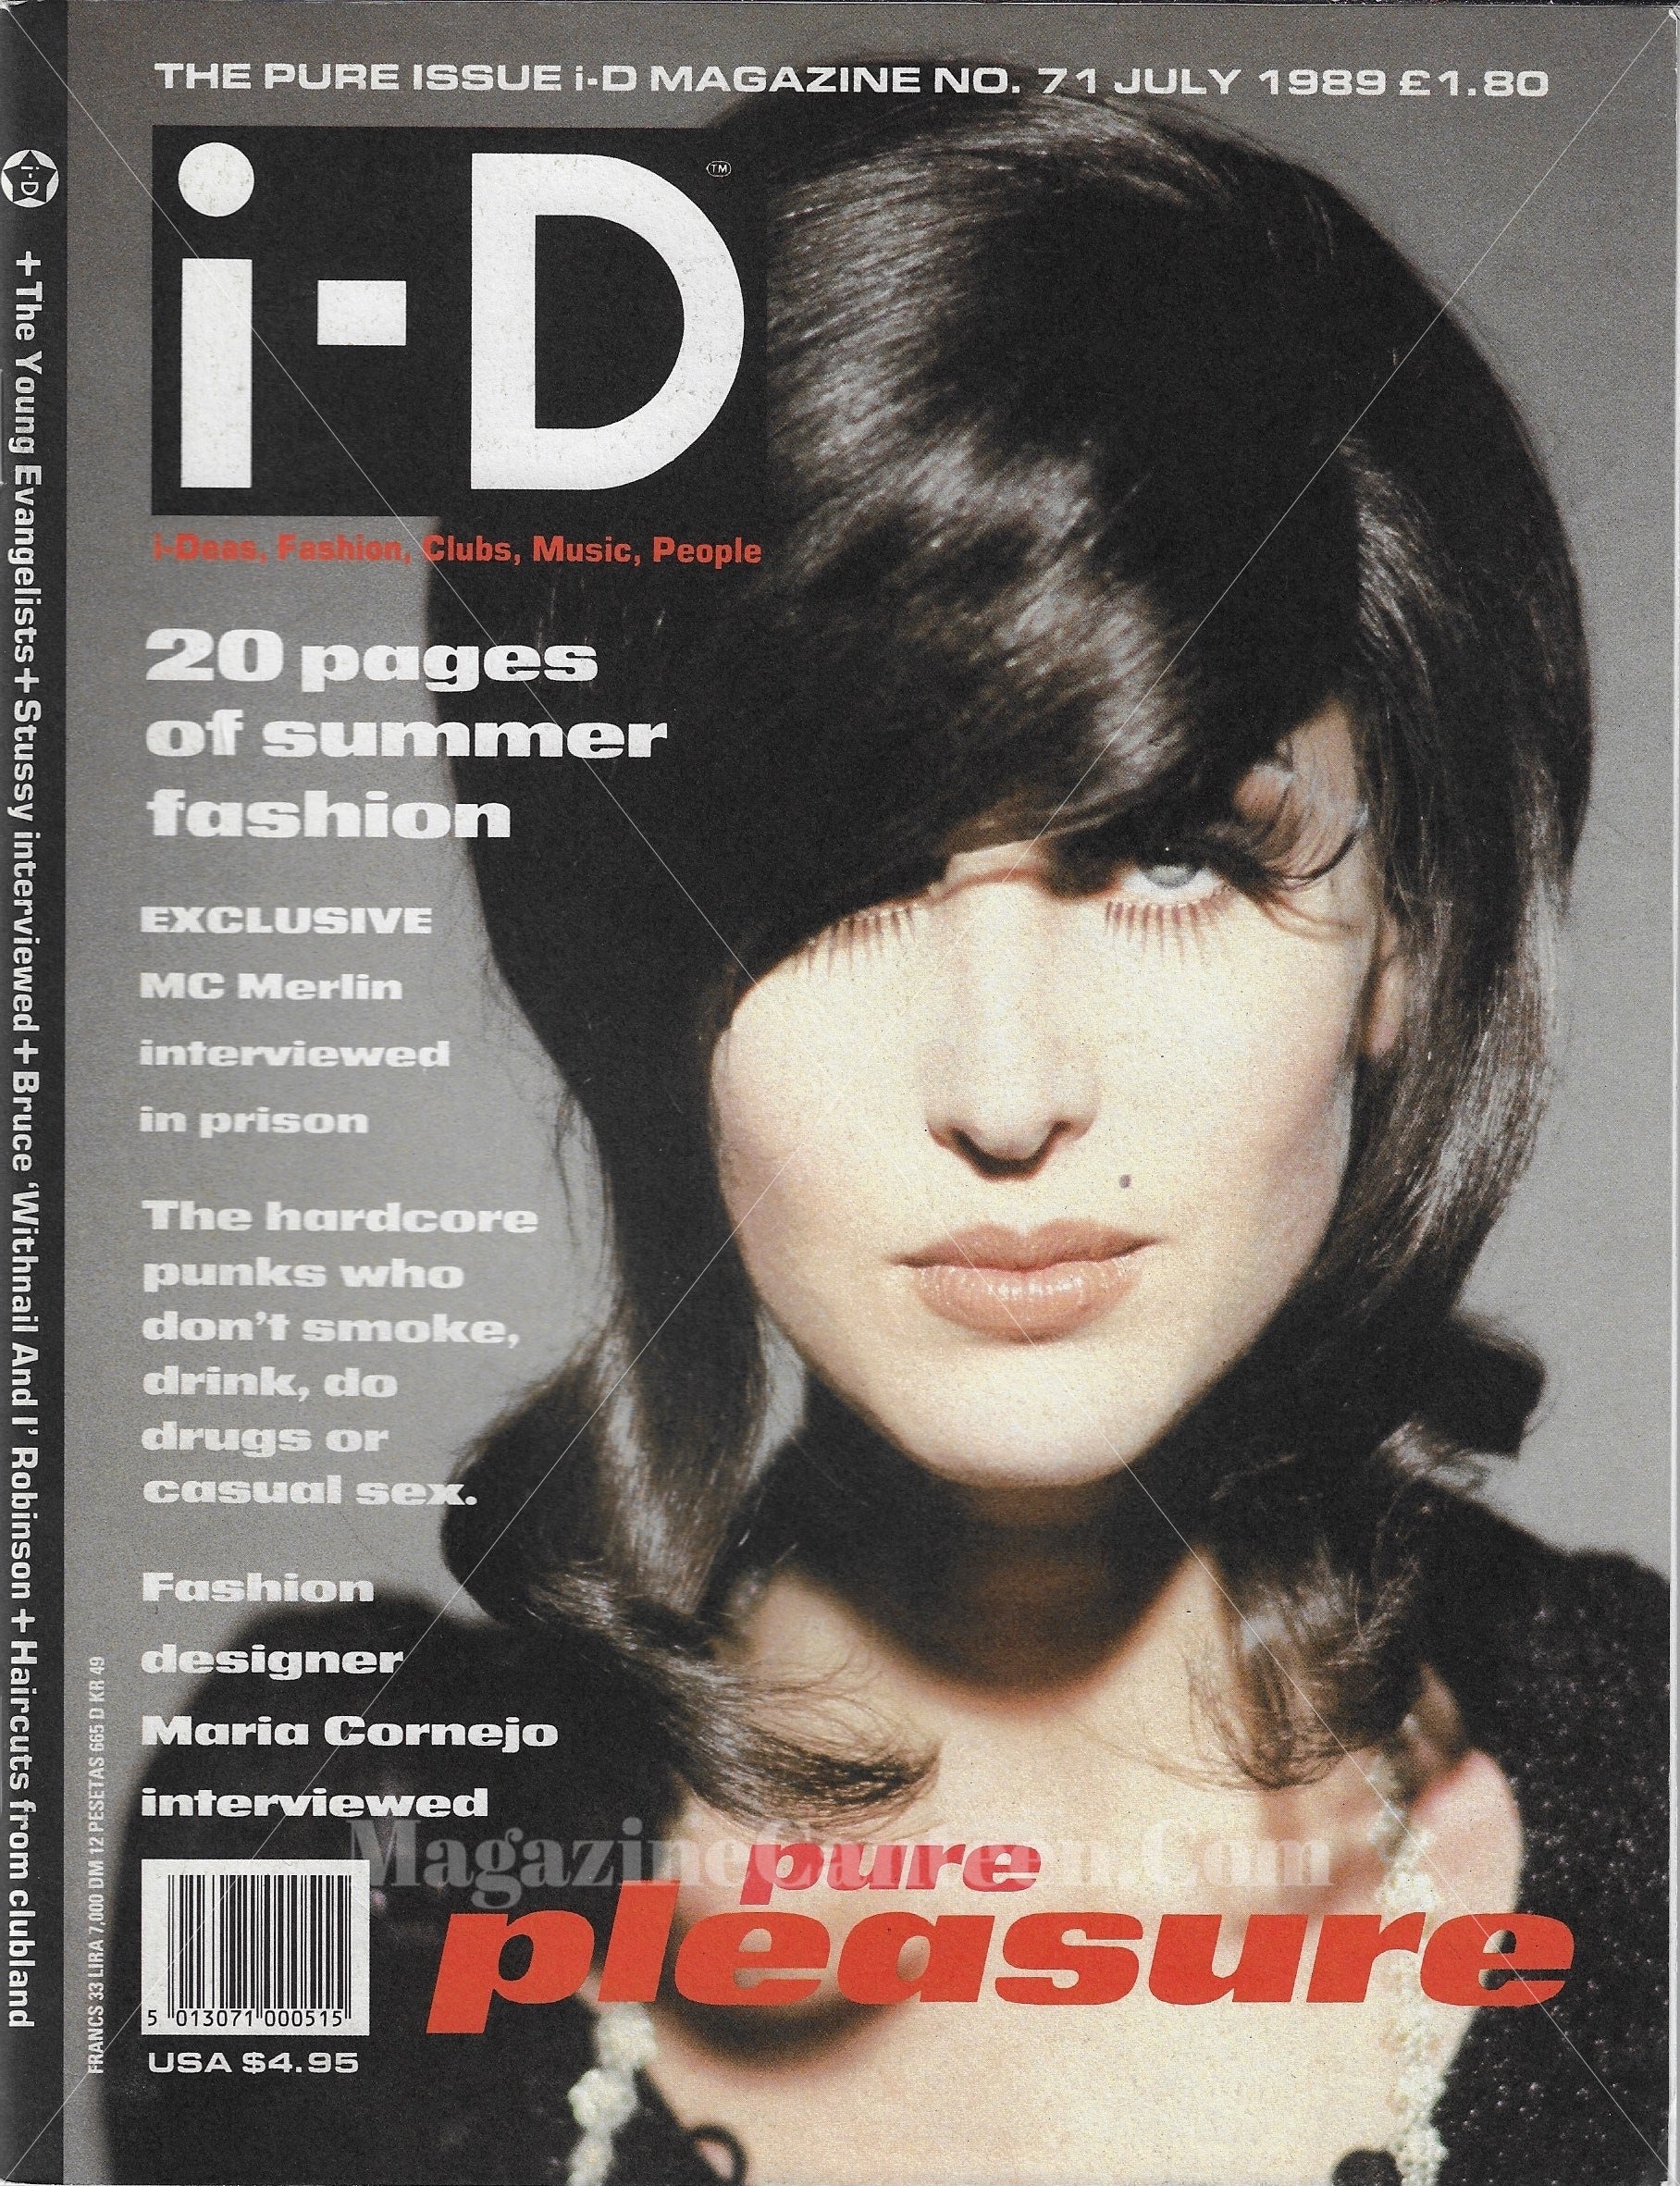 I-D Magazine 71 - Kayla 1989